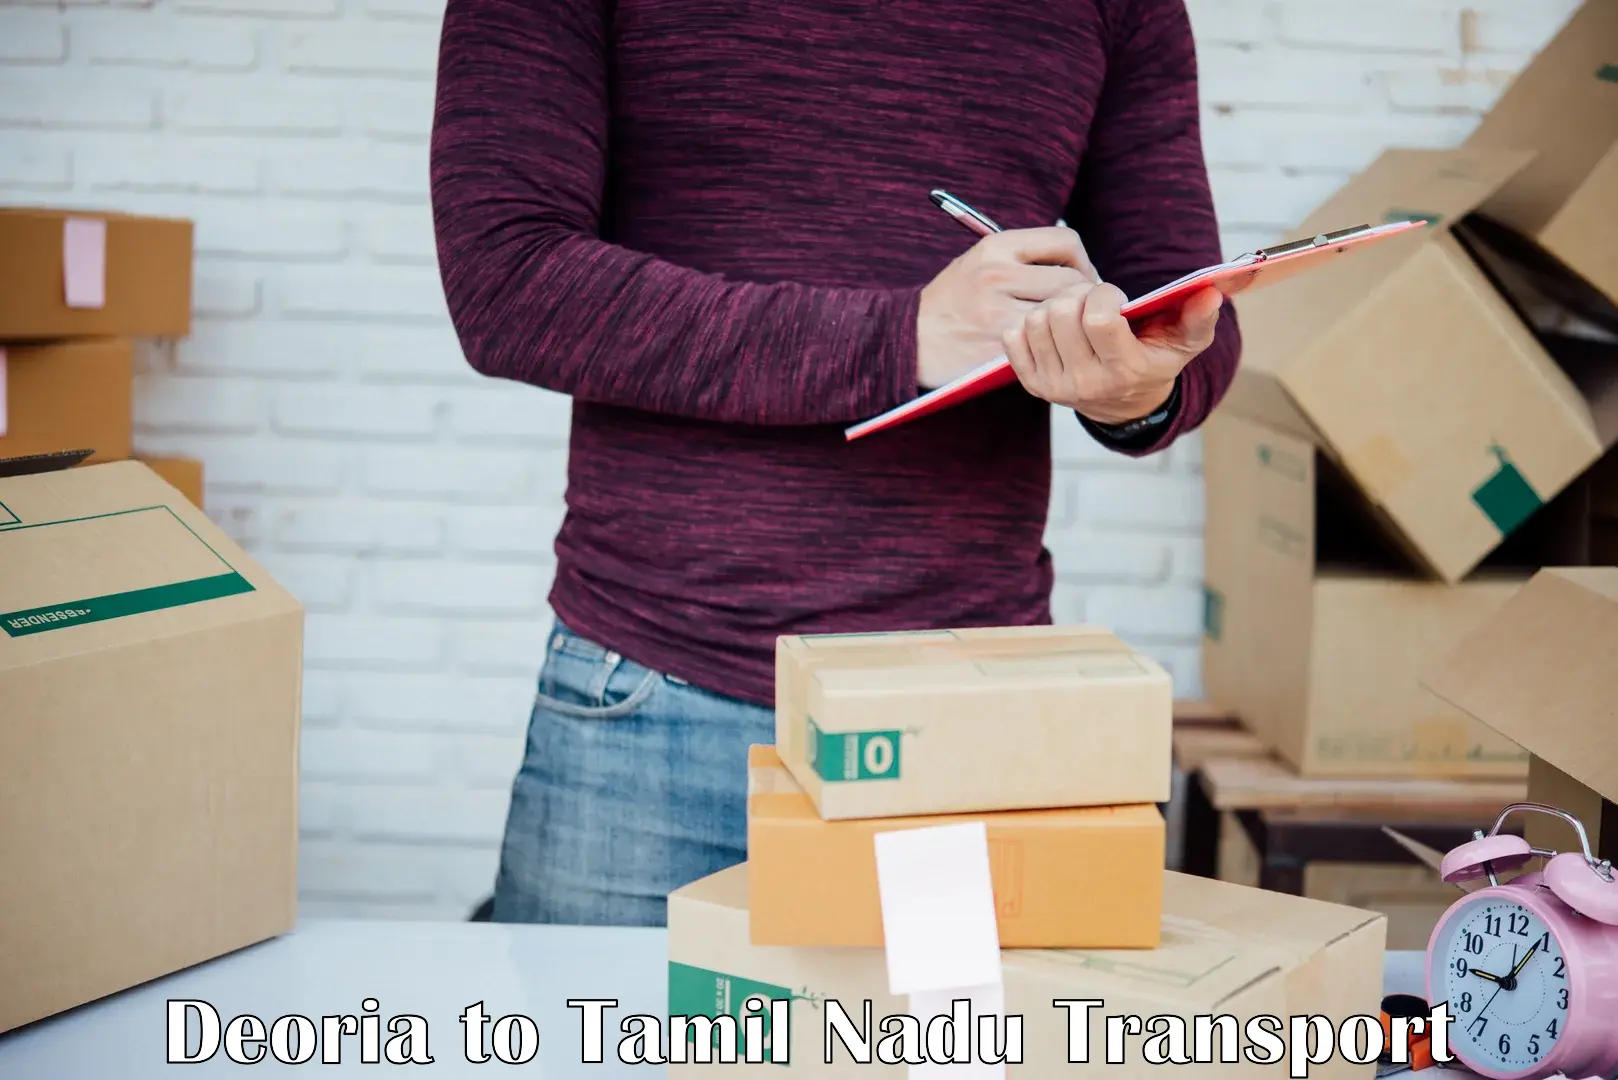 Furniture transport service Deoria to Tiruchengodu